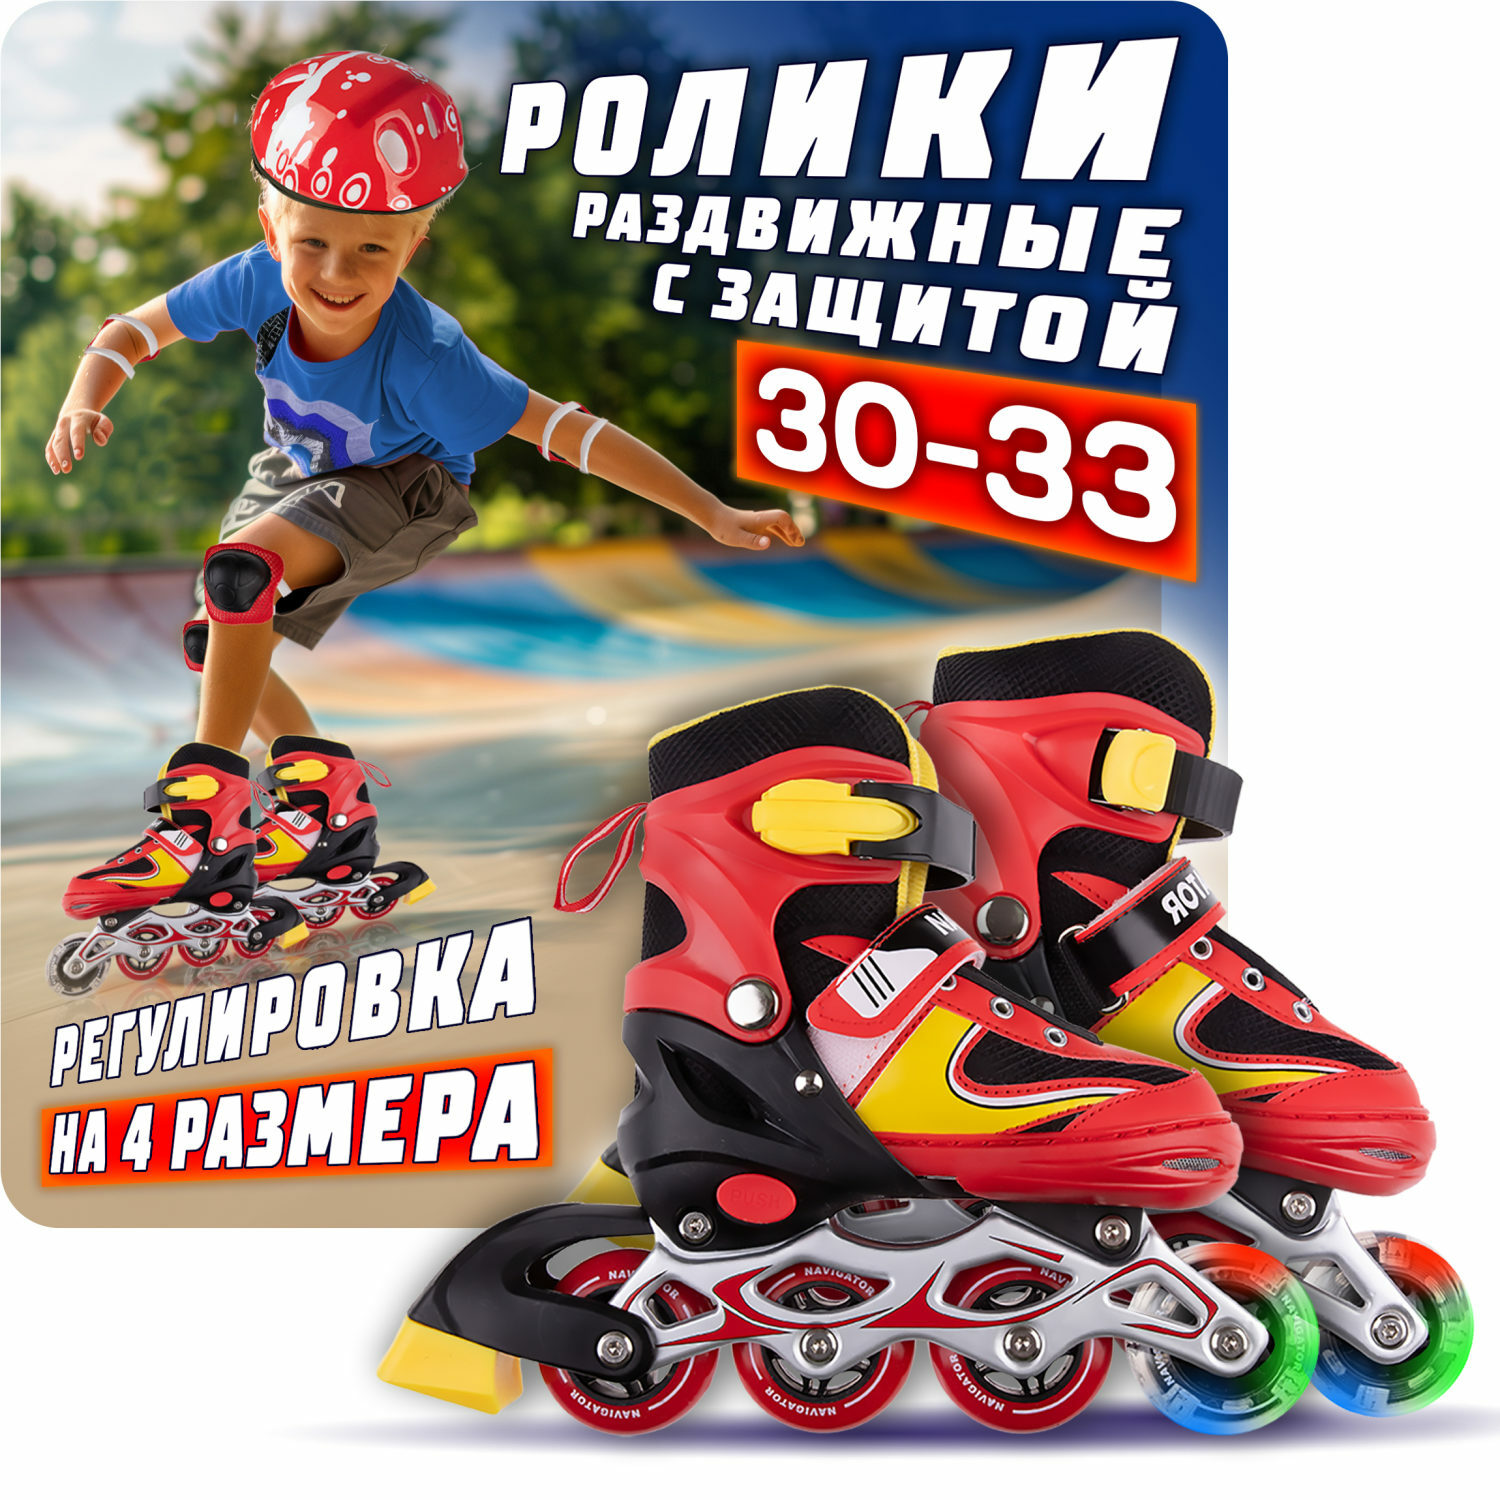 Ролики Navigator детские раздвижные 30 - 33 размер с защитой и шлемом красный - фото 1